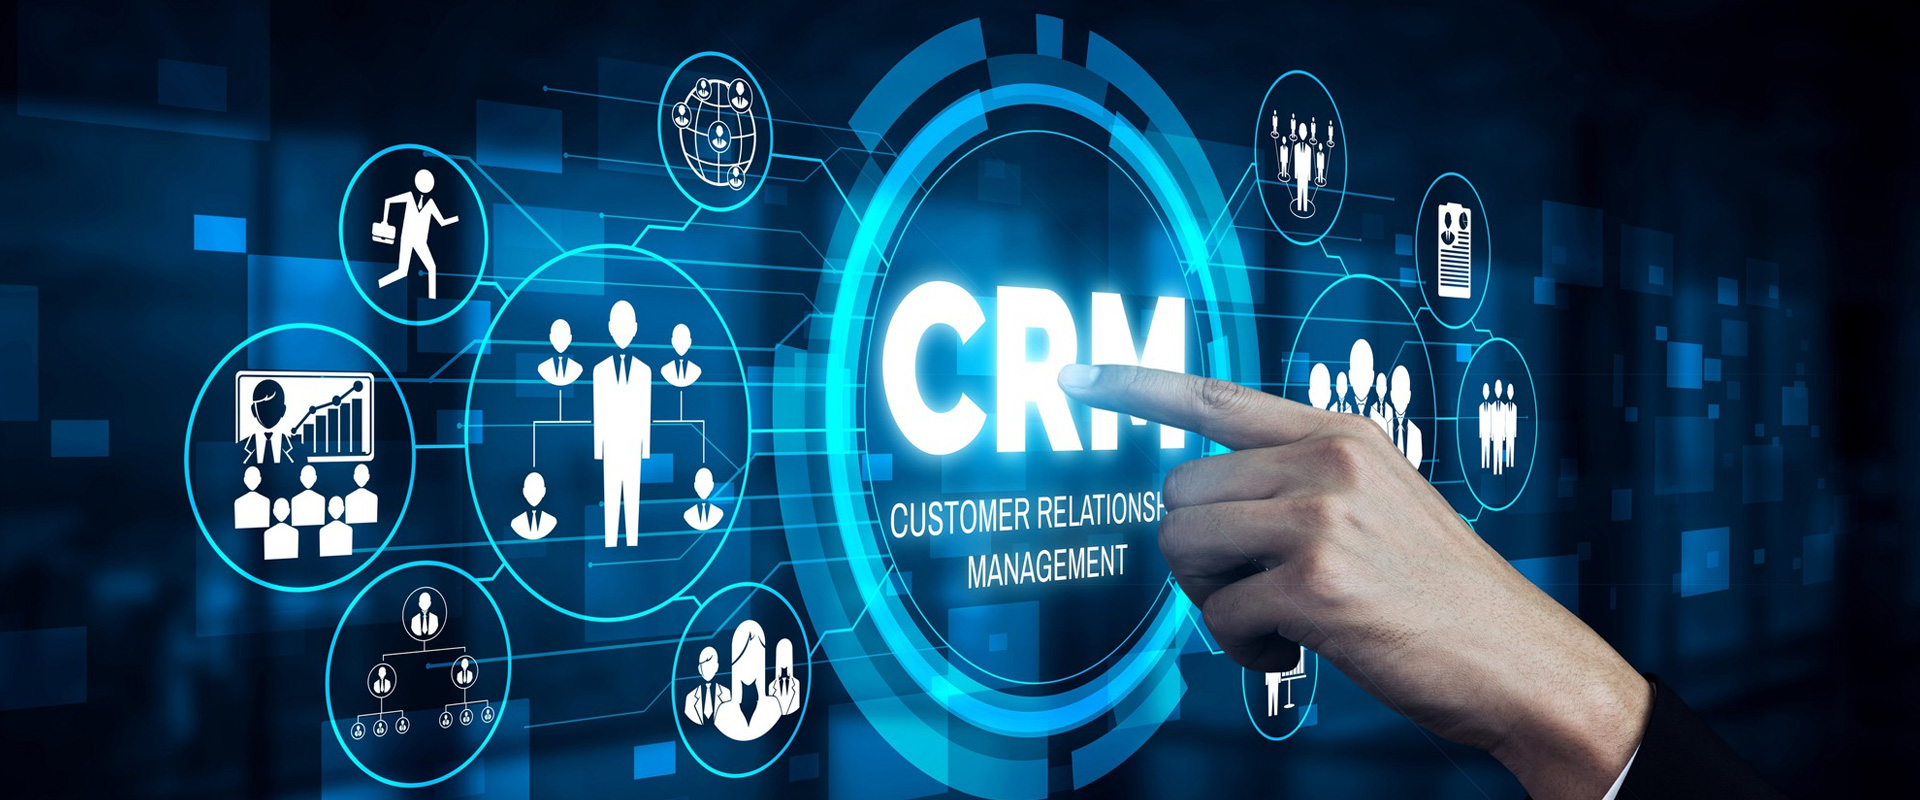 RevalCRM - Customer Relationship Management 